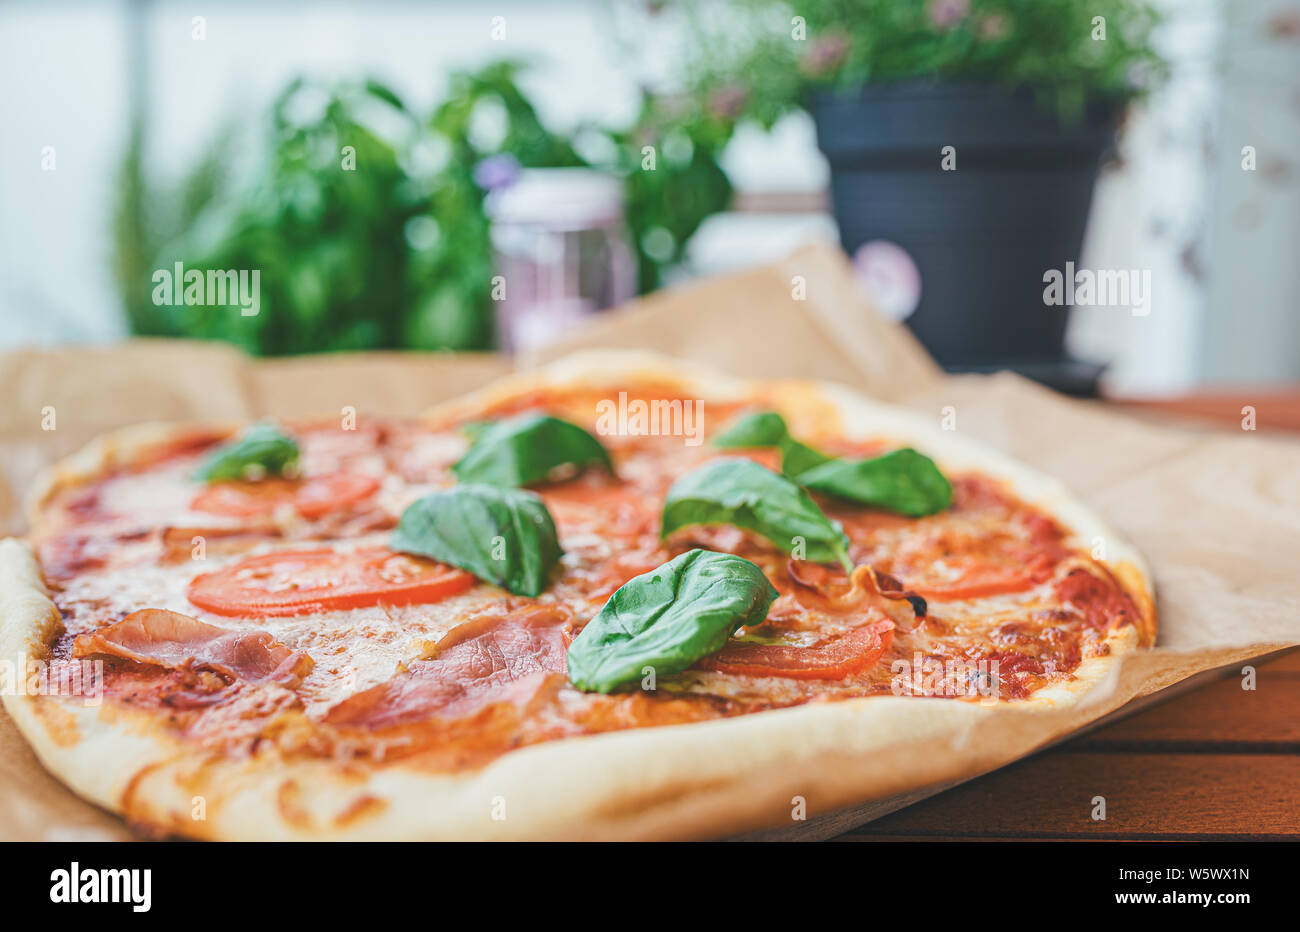 Des pizzas fraîches avec du jambon serrano, des tranches de tomate et des feuilles de basilic frais sur table en bois on patio Banque D'Images